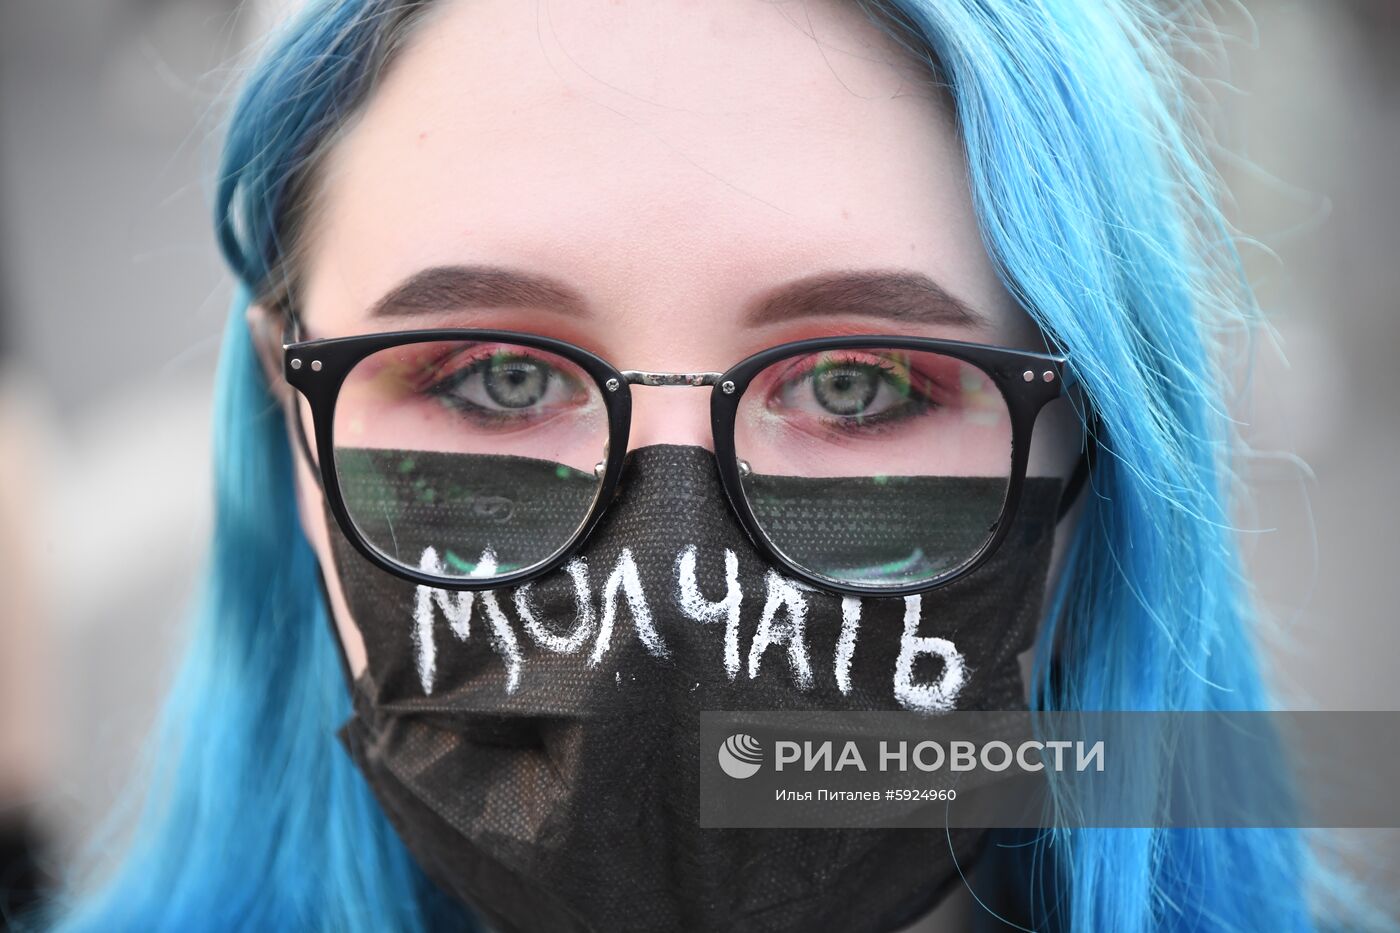 Митинг в поддержку журналистов в Москве